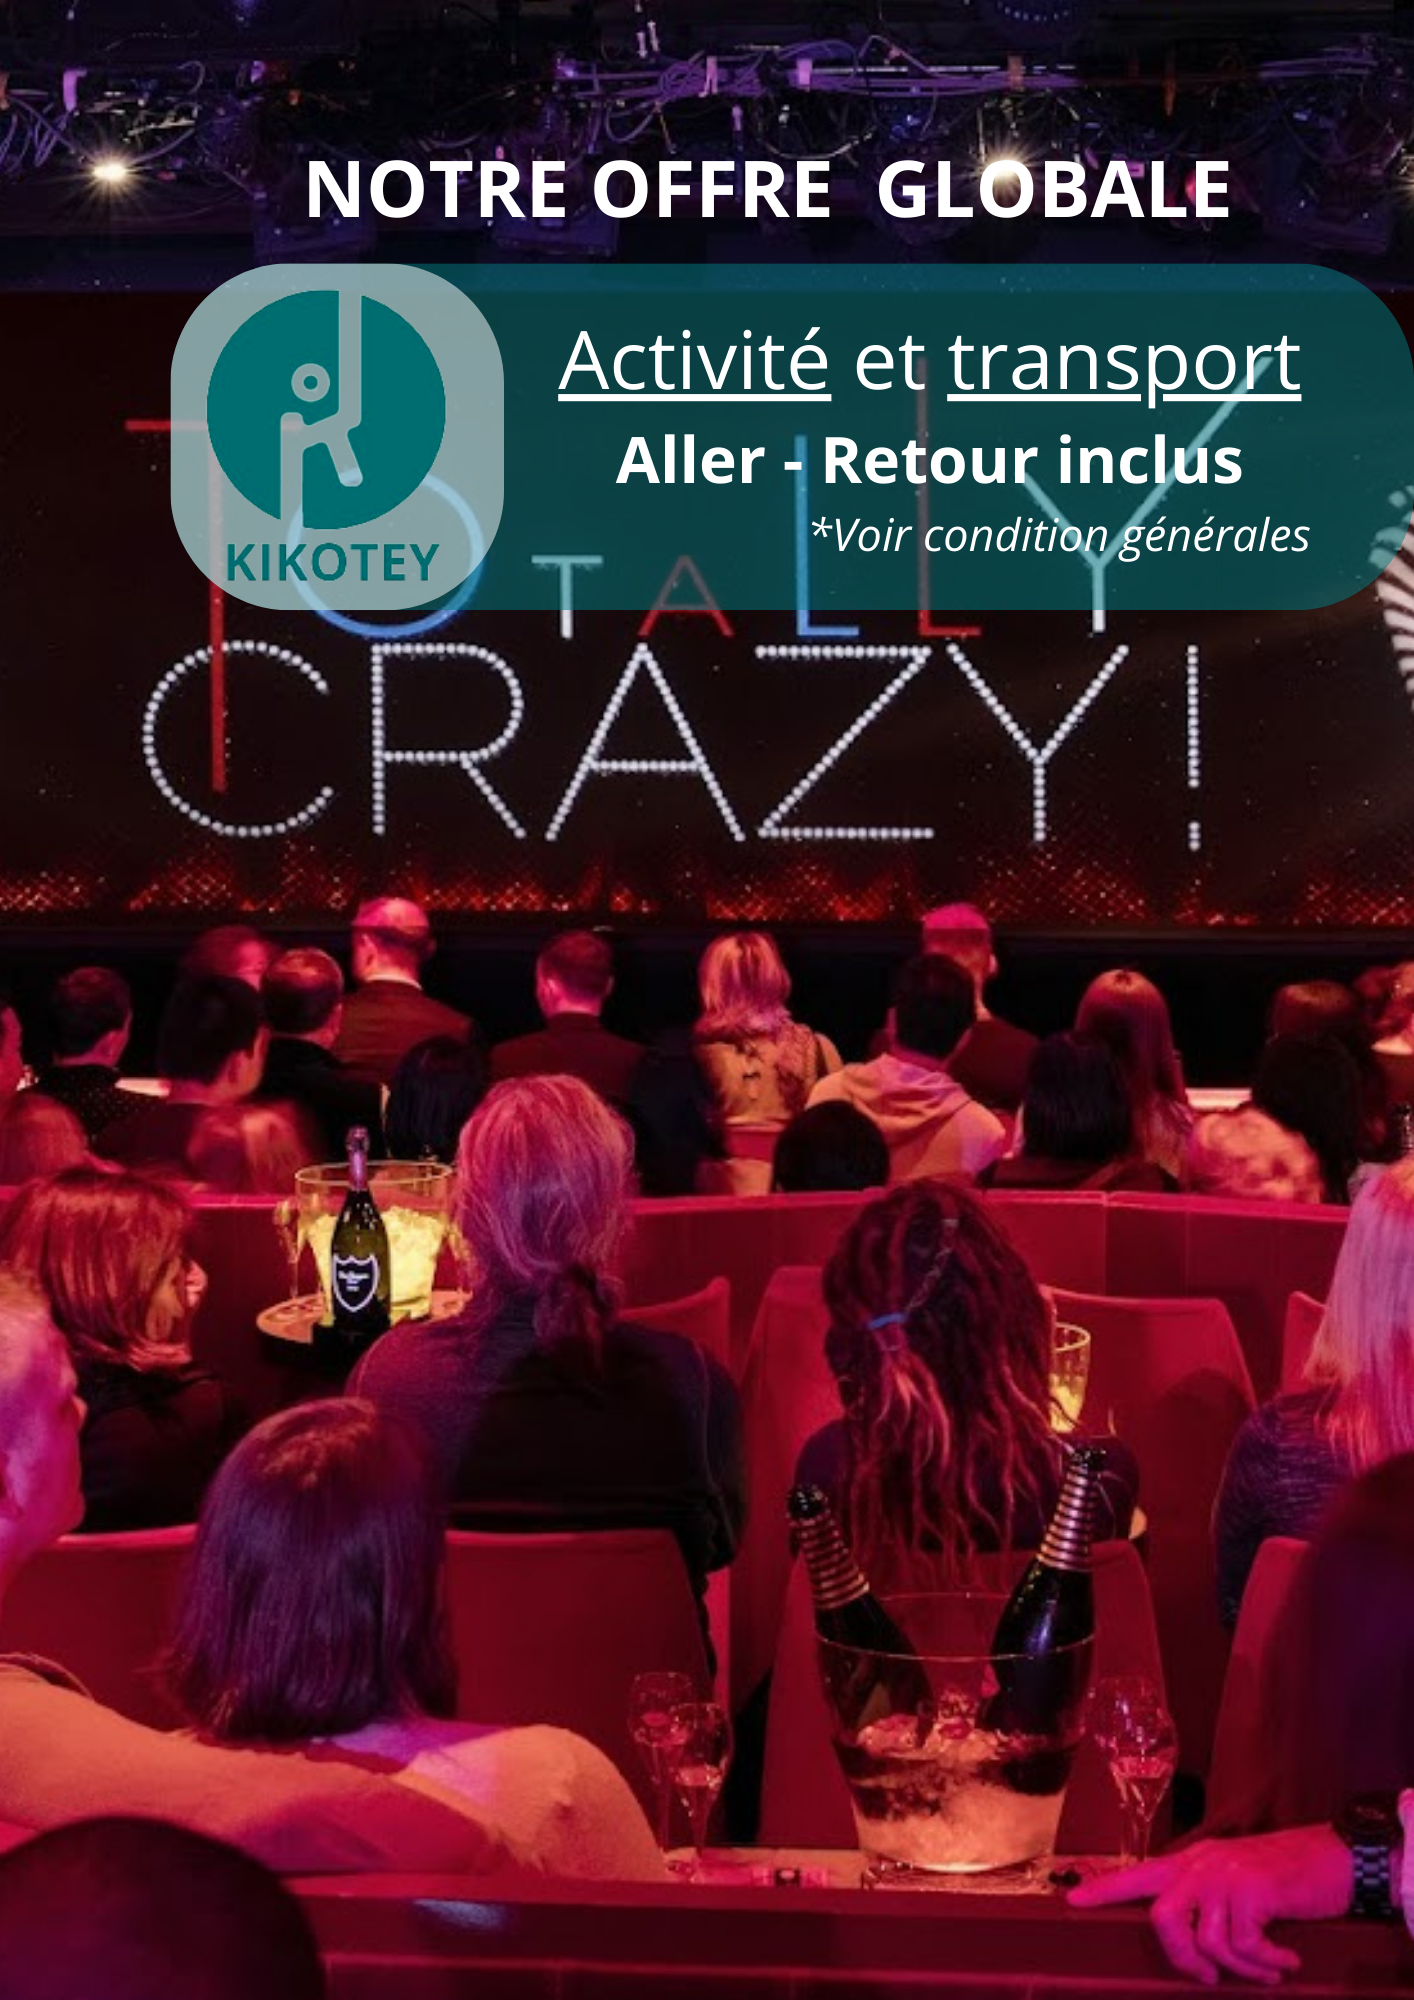 Cabaret l Crazy Horse Paris l Offre en semaine et week-end  tout compris